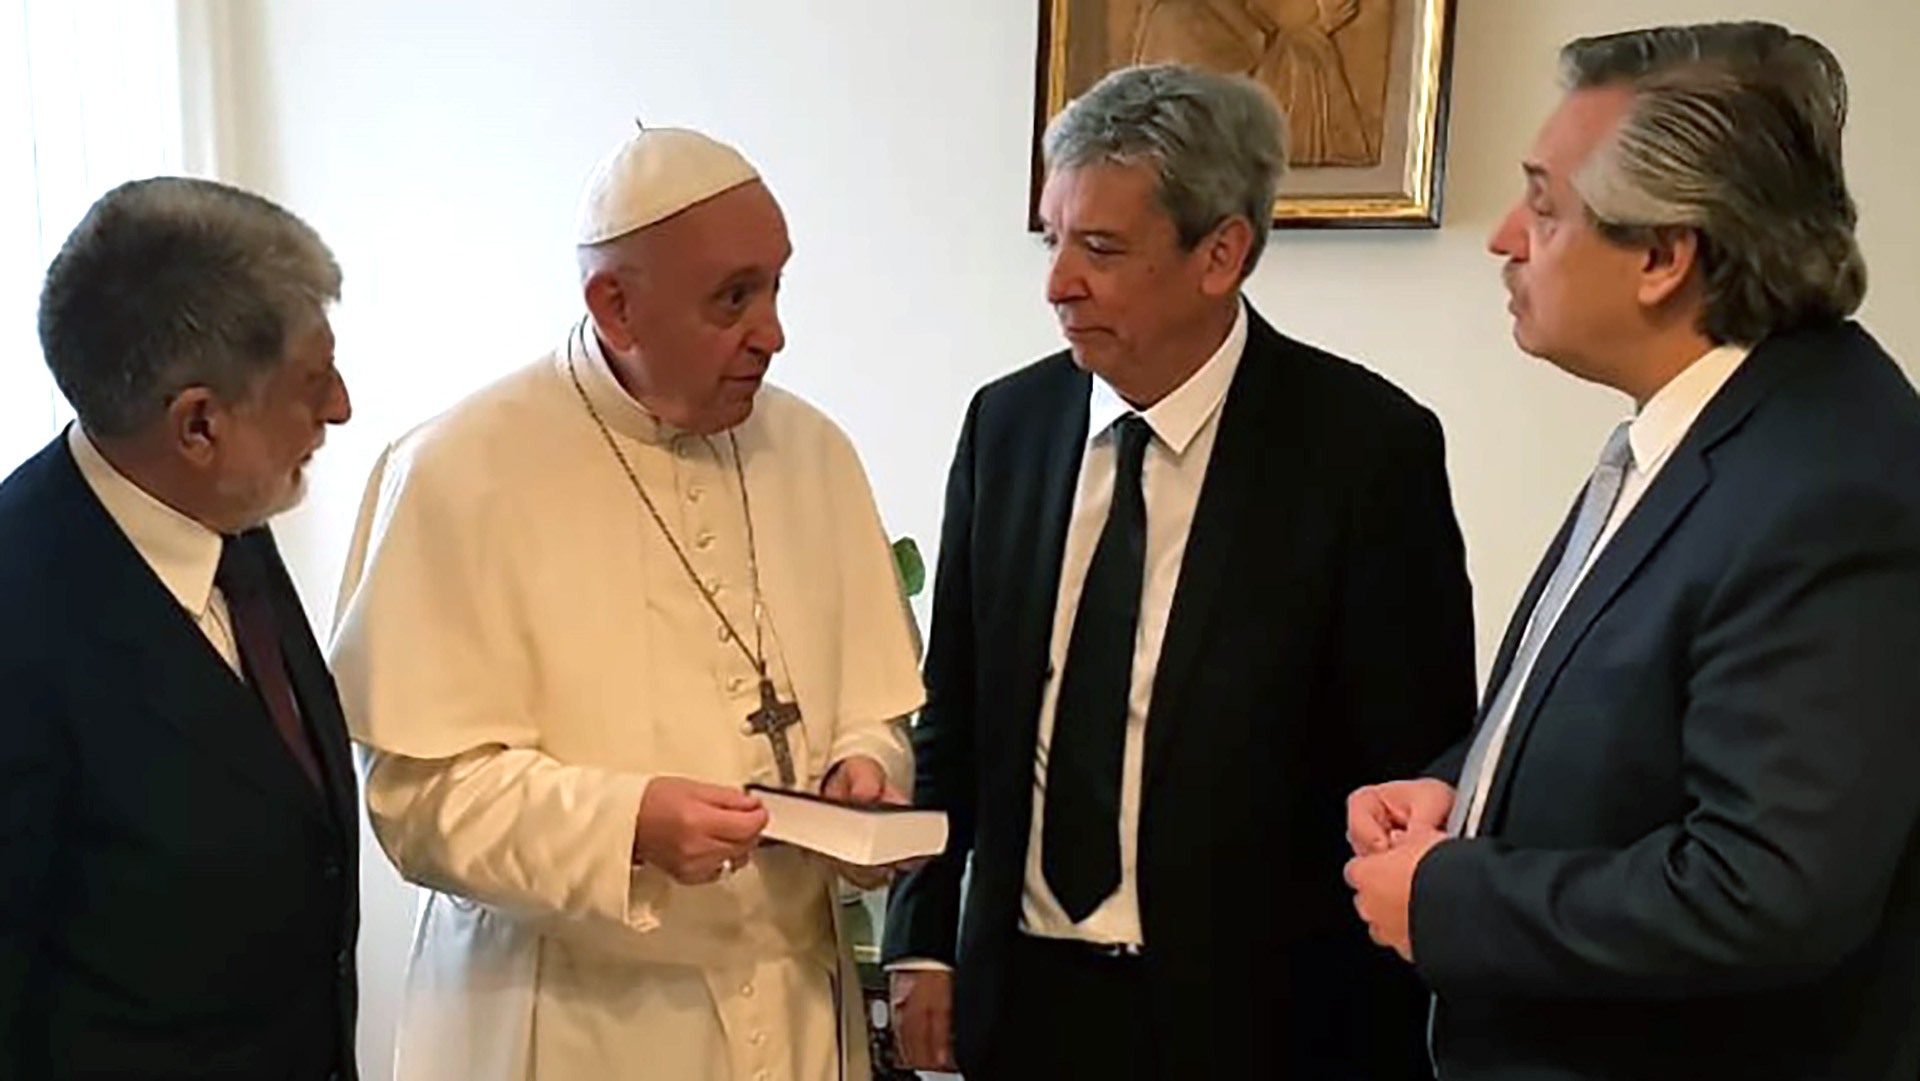 Alberto Fernández ya se reunió con el Papa tiempo atrás, aunque será la primera vez que lo vea en su rol de Presidente. (Foto gentileza)